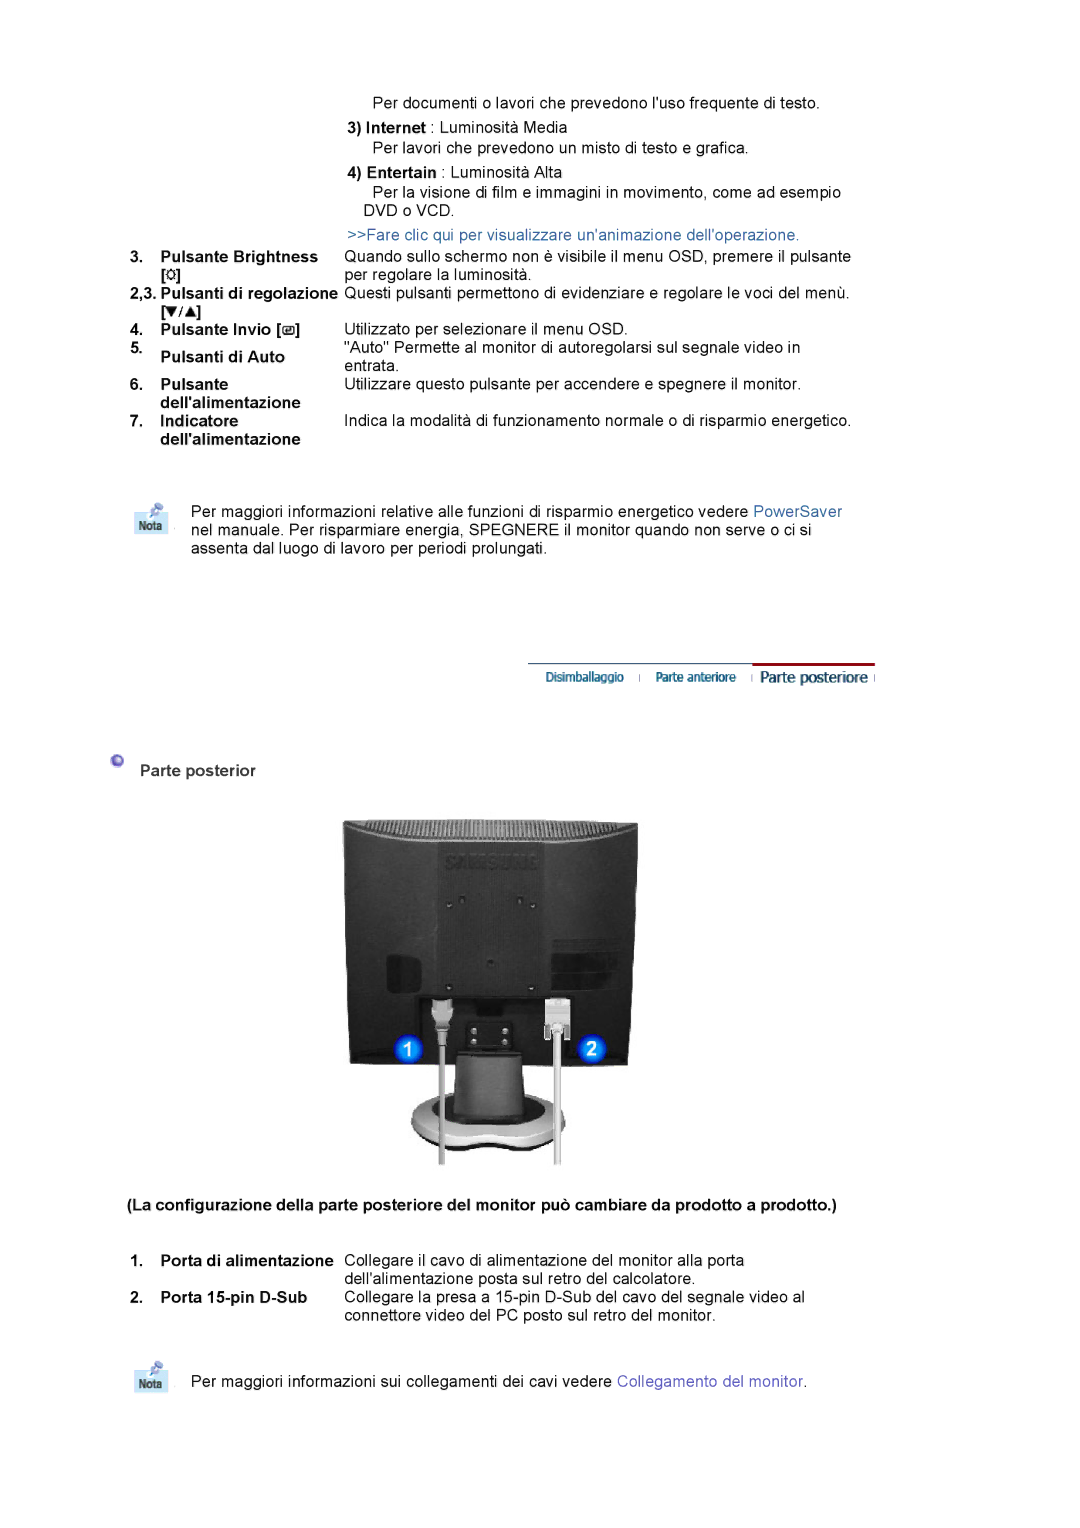 Samsung MJ17CSKS/EDC manual Fare clic qui per visualizzare unanimazione delloperazione, Parte posterior 